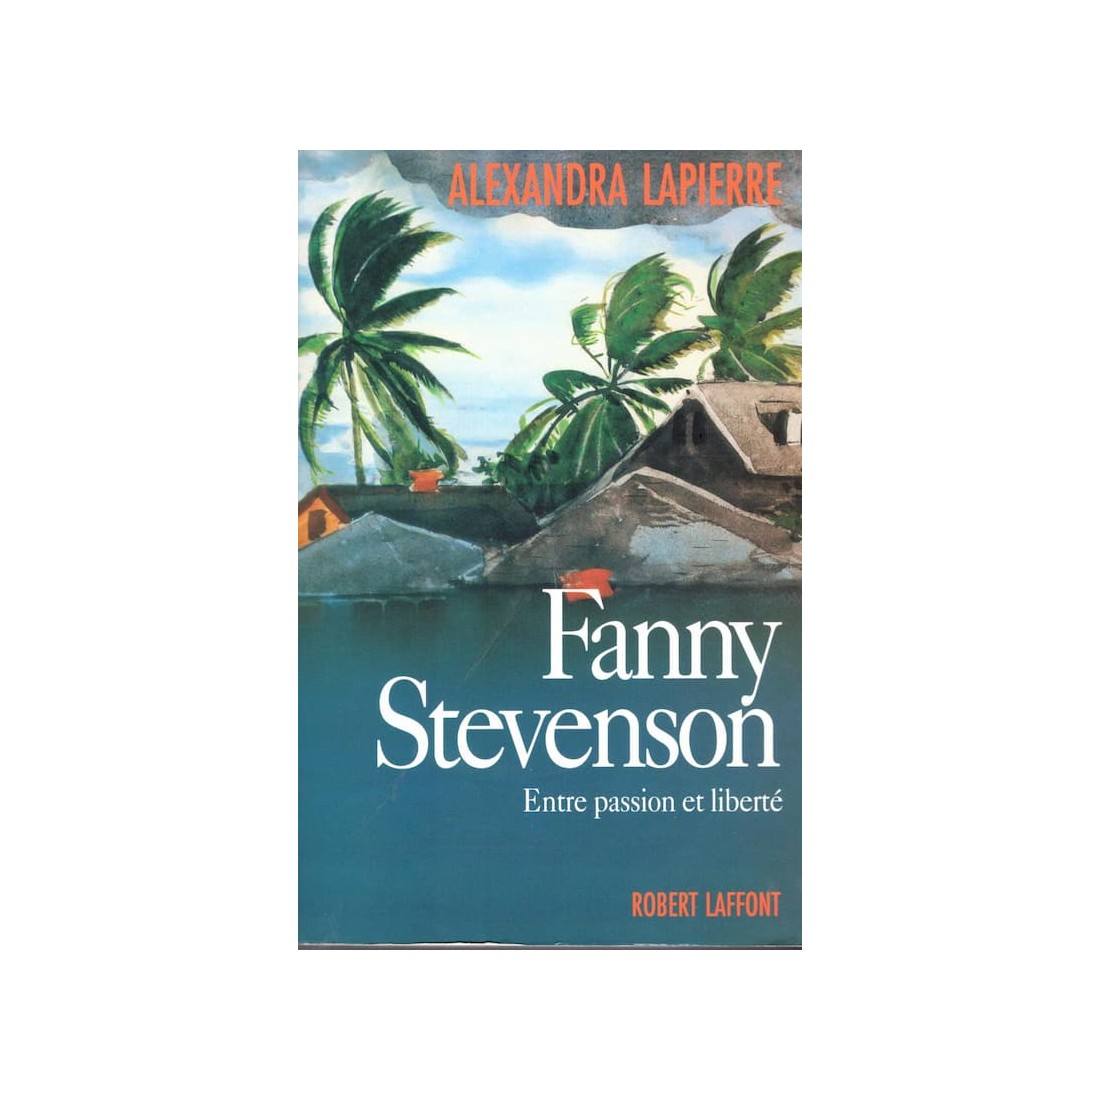 Fanny Stevenson - Roman de Alexandra Lapierre - Ocazlivres.com